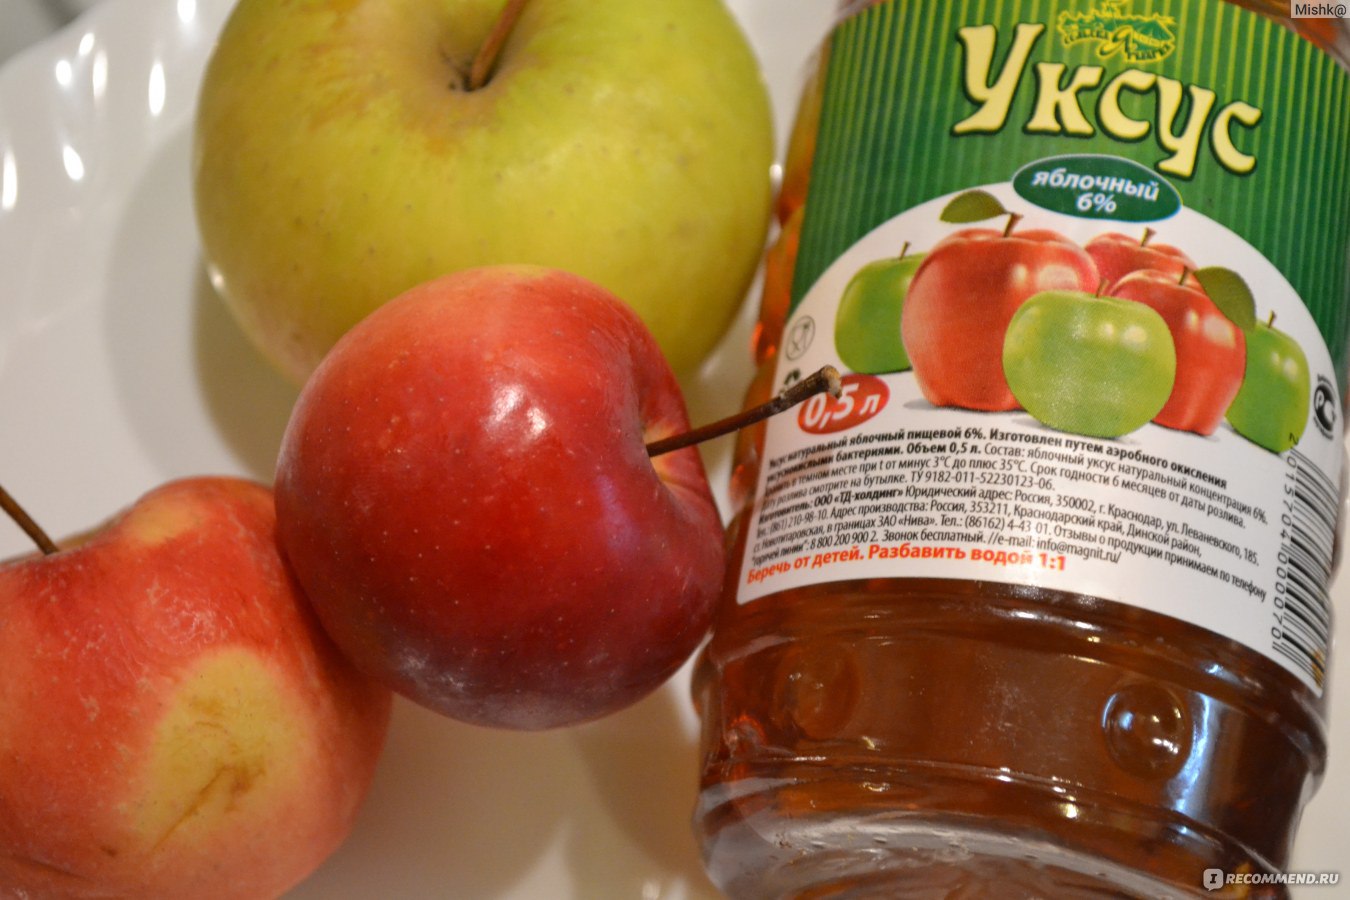 Яблочный уксус для похудения - польза, как и сколько пить